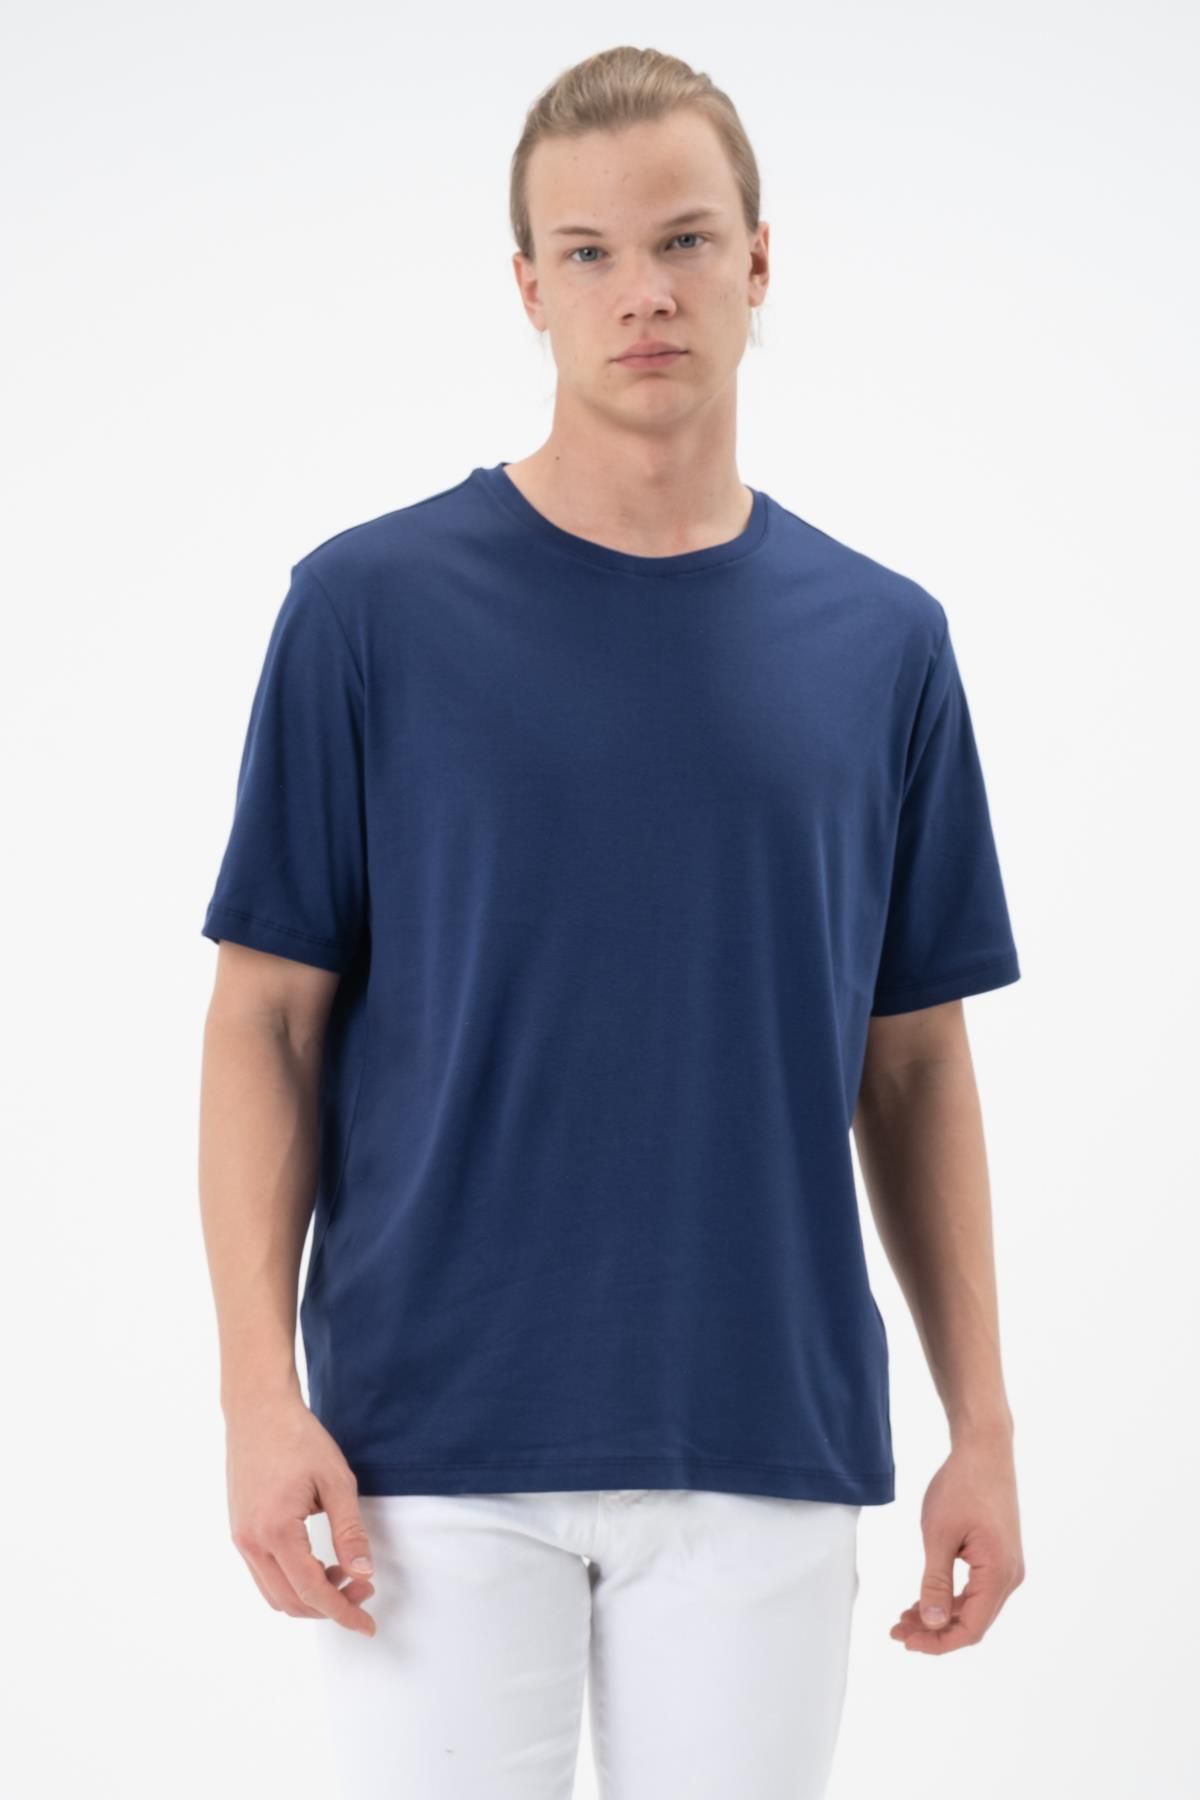 Rich Erkek Tişört Merserize T-shirt Oversize Tshirt